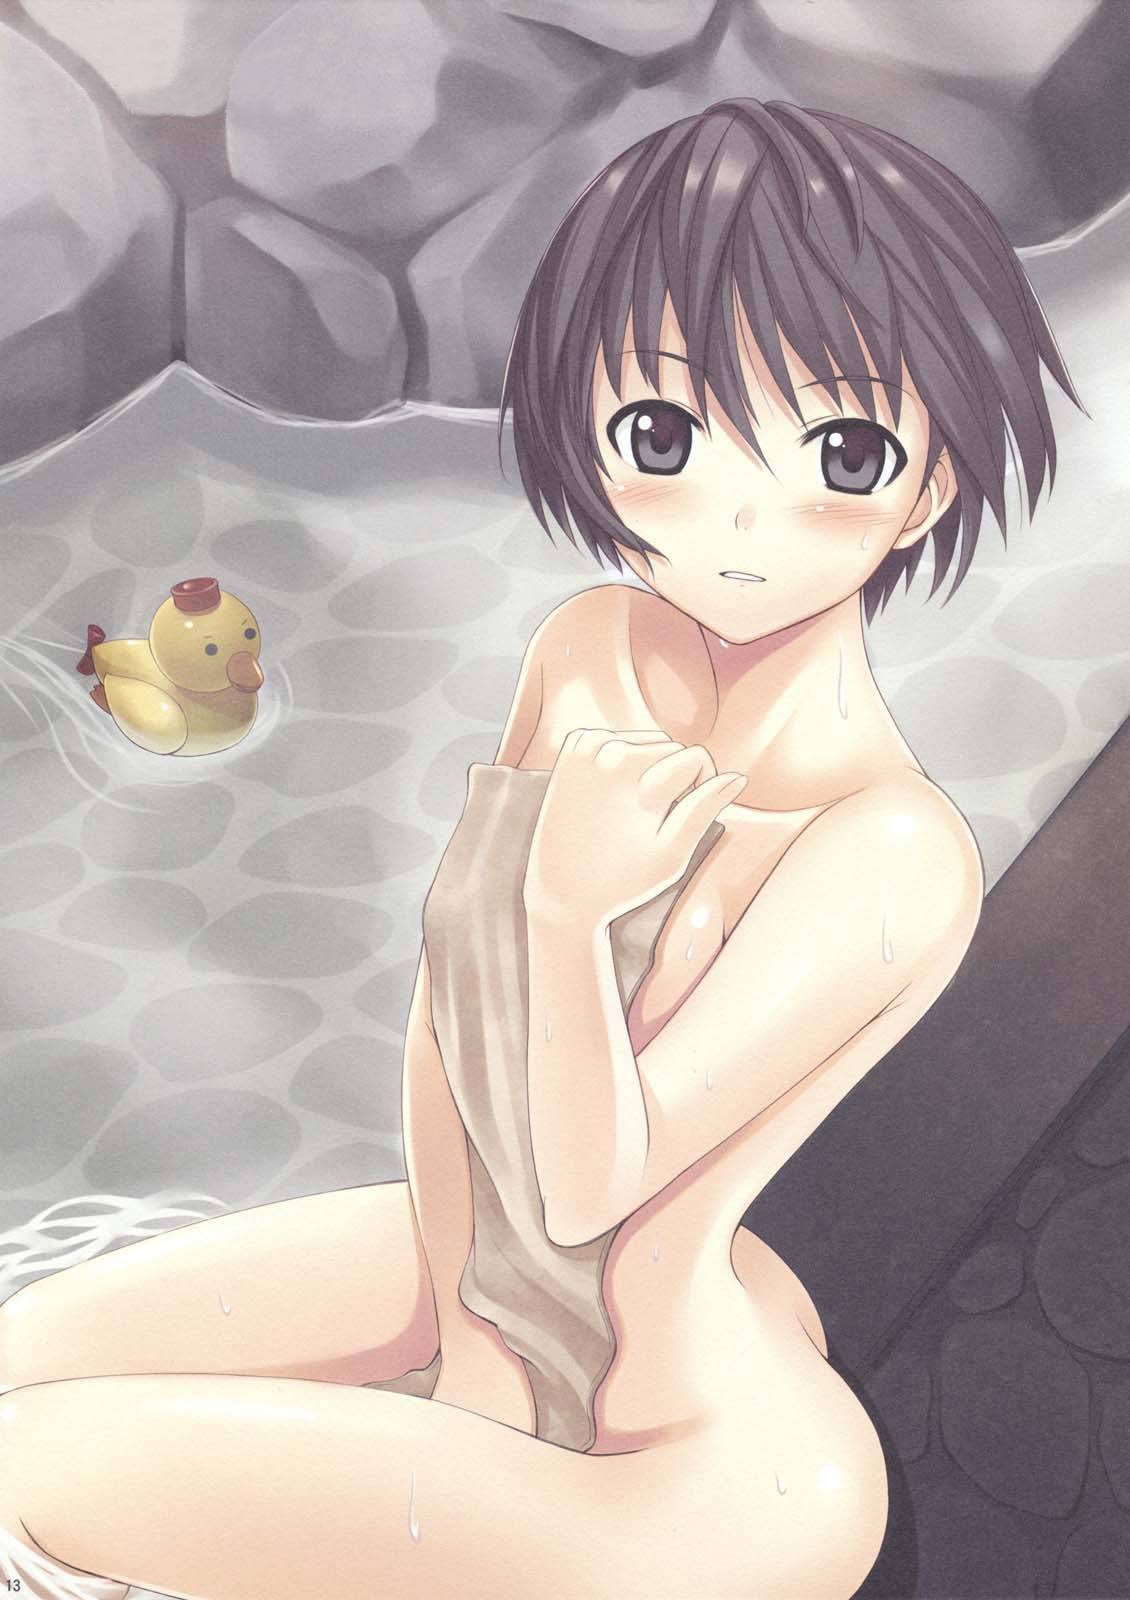 【モヤモヤする】タオルで上手いこと一番見たい部分を隠してる二次お風呂・温泉エロ画像【2】